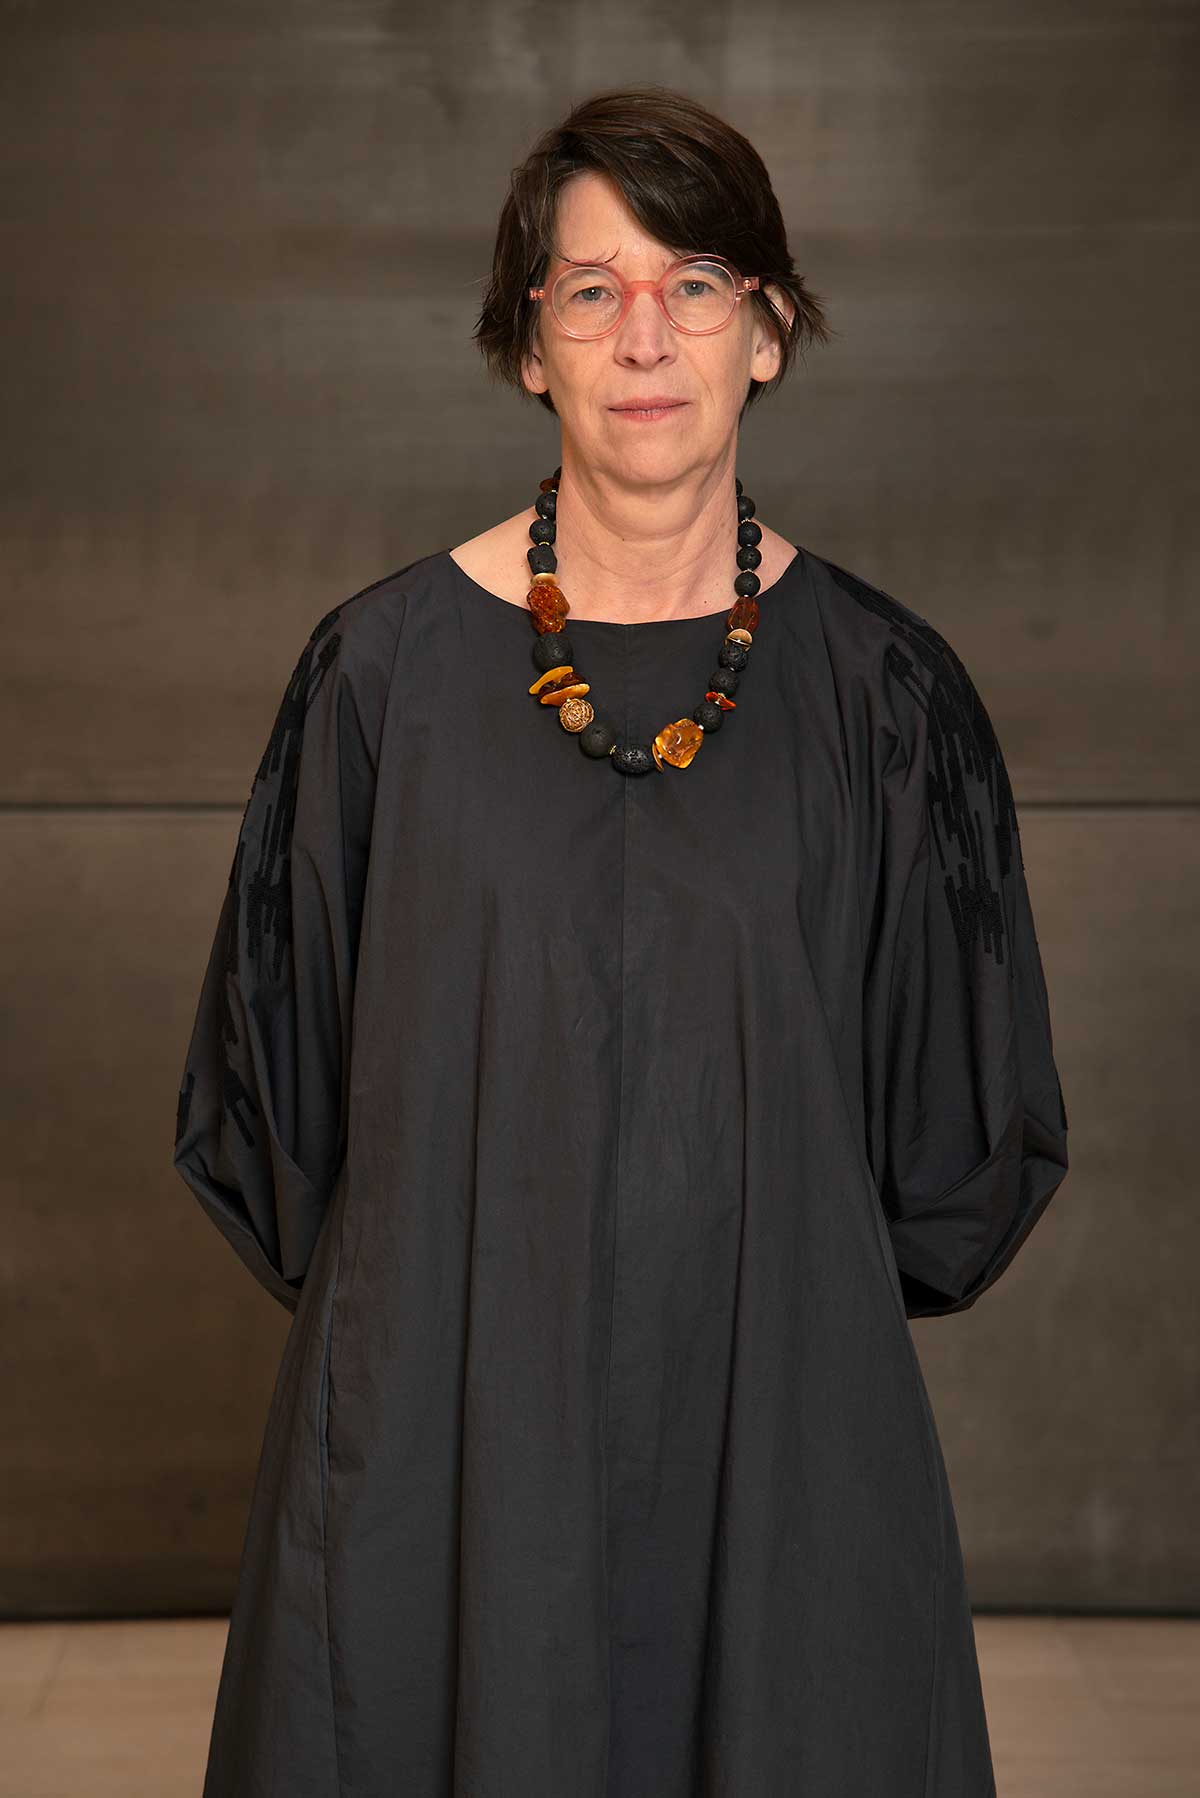 headshot of a woman wearing a gray dress